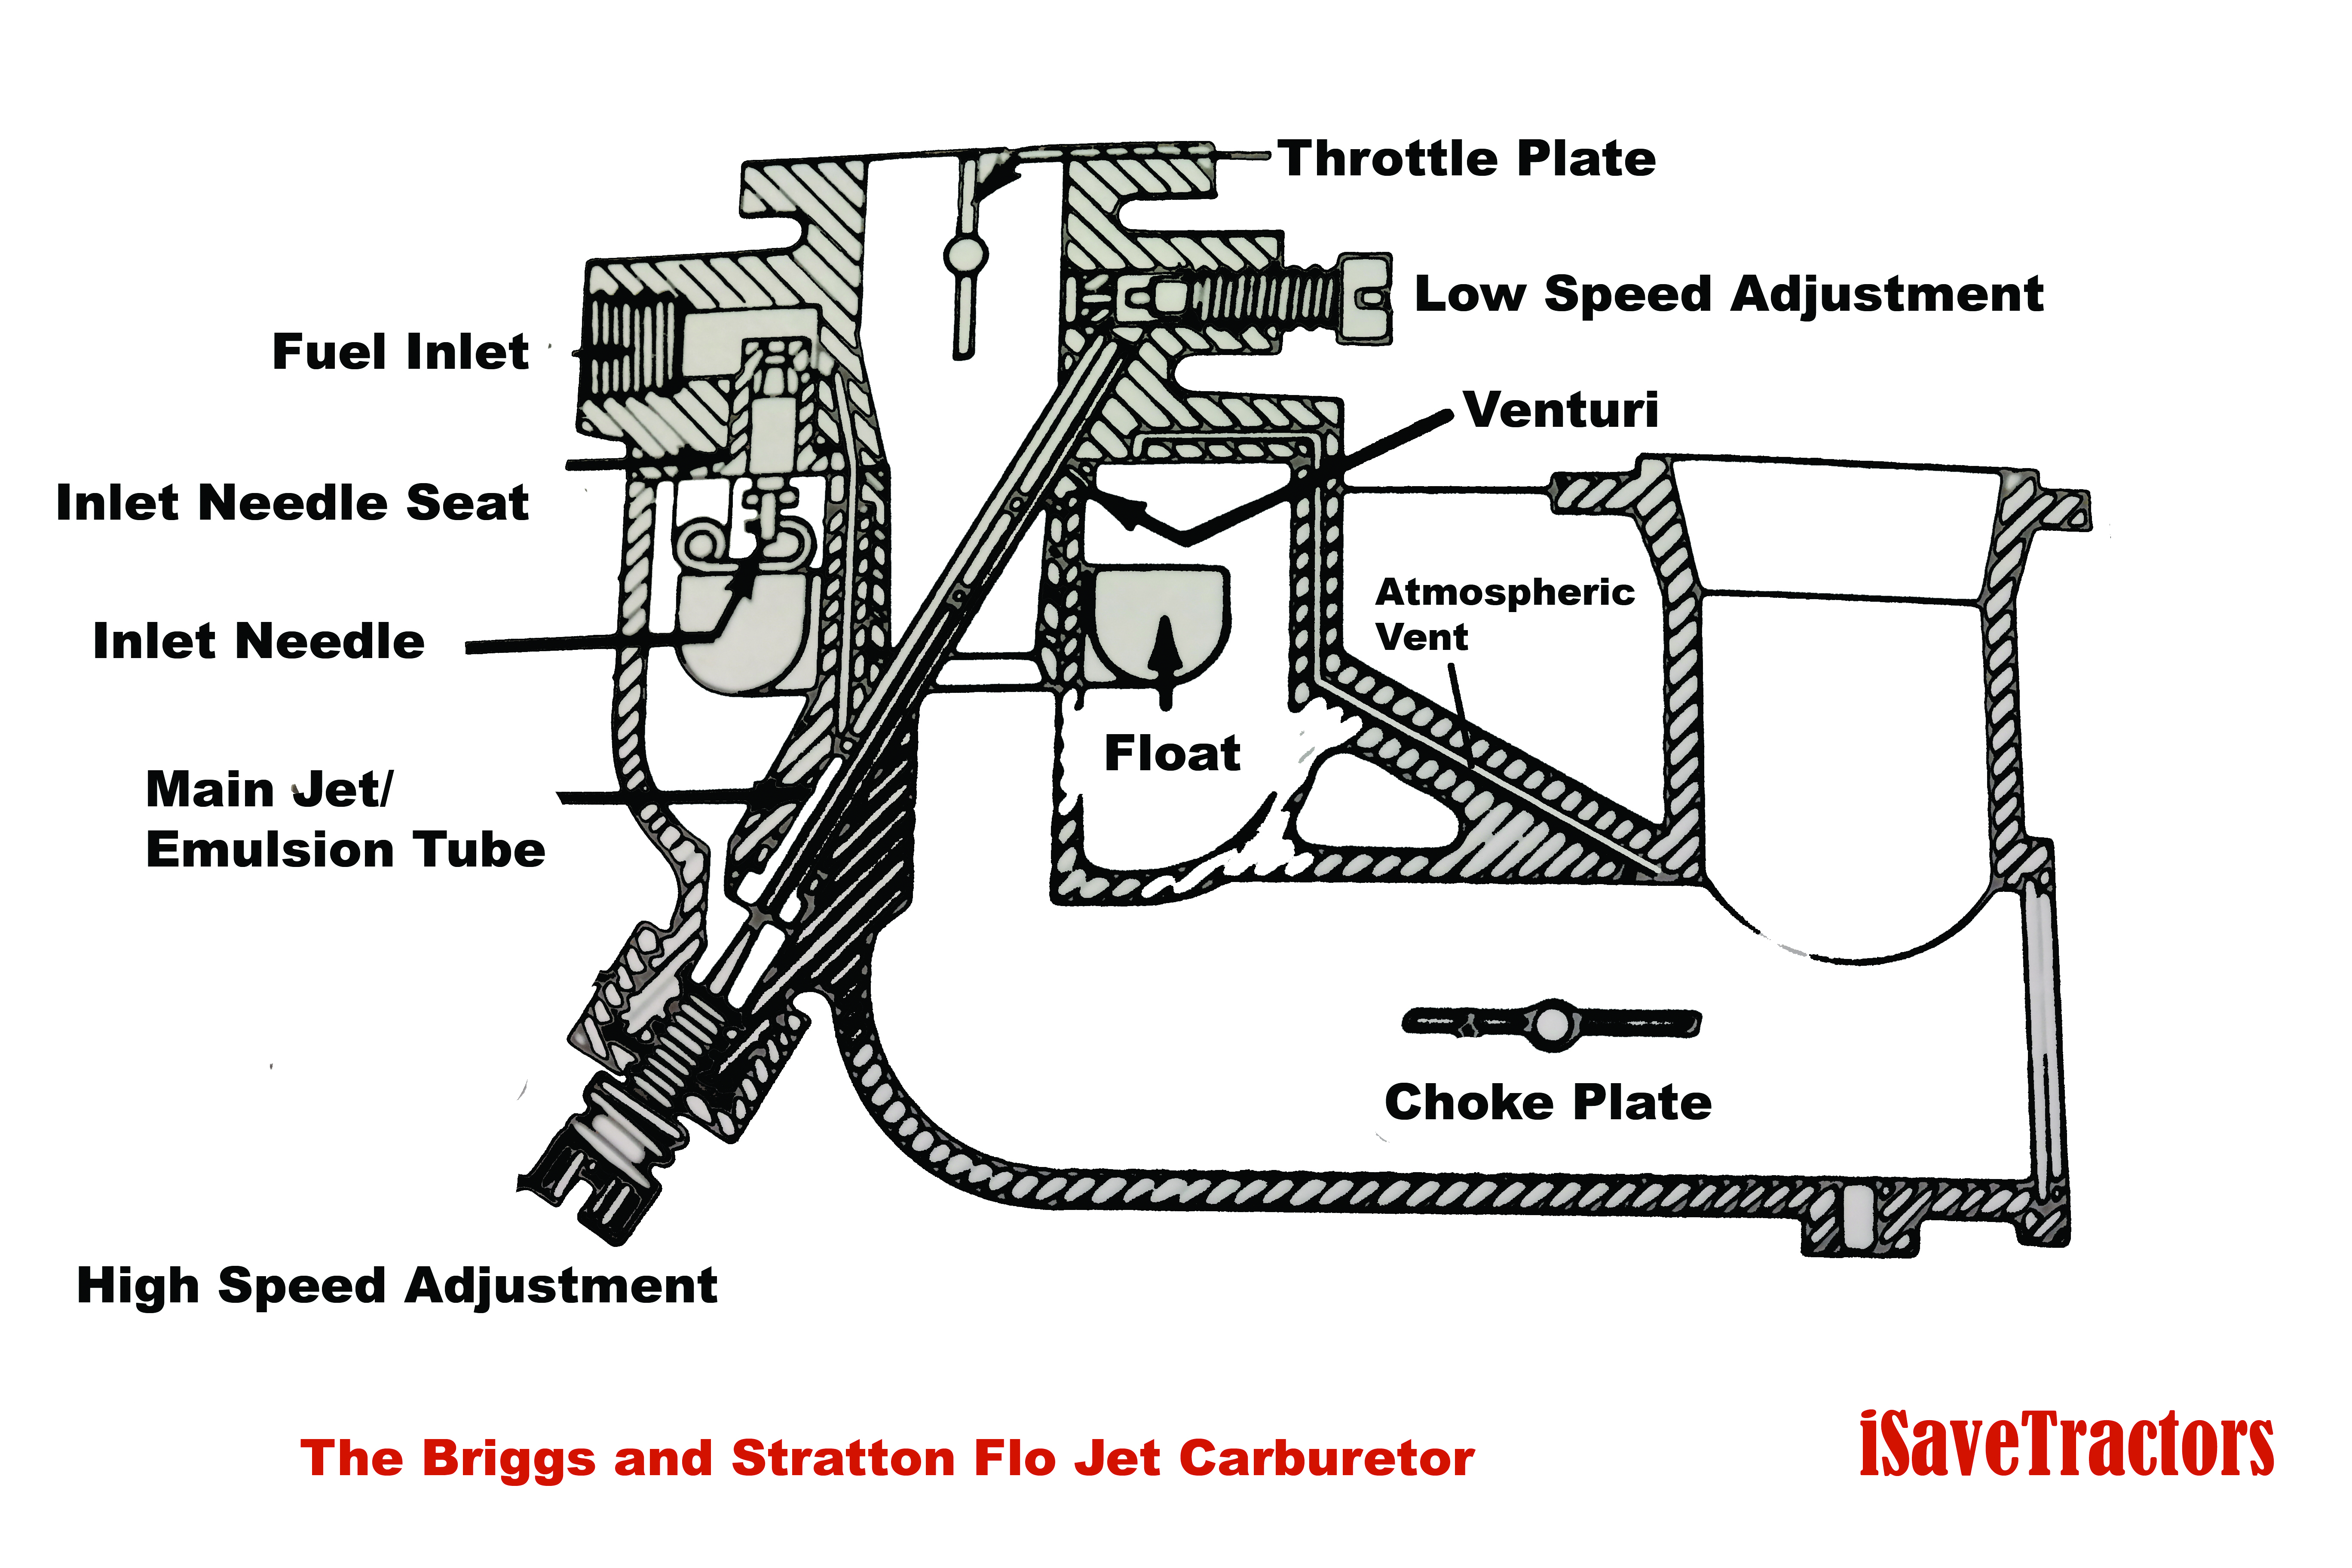 5Hp Briggs And Stratton Carburetor Diagram Briggs And Stratton Carb Adjustment Diagram Meta Wiring Diagrams